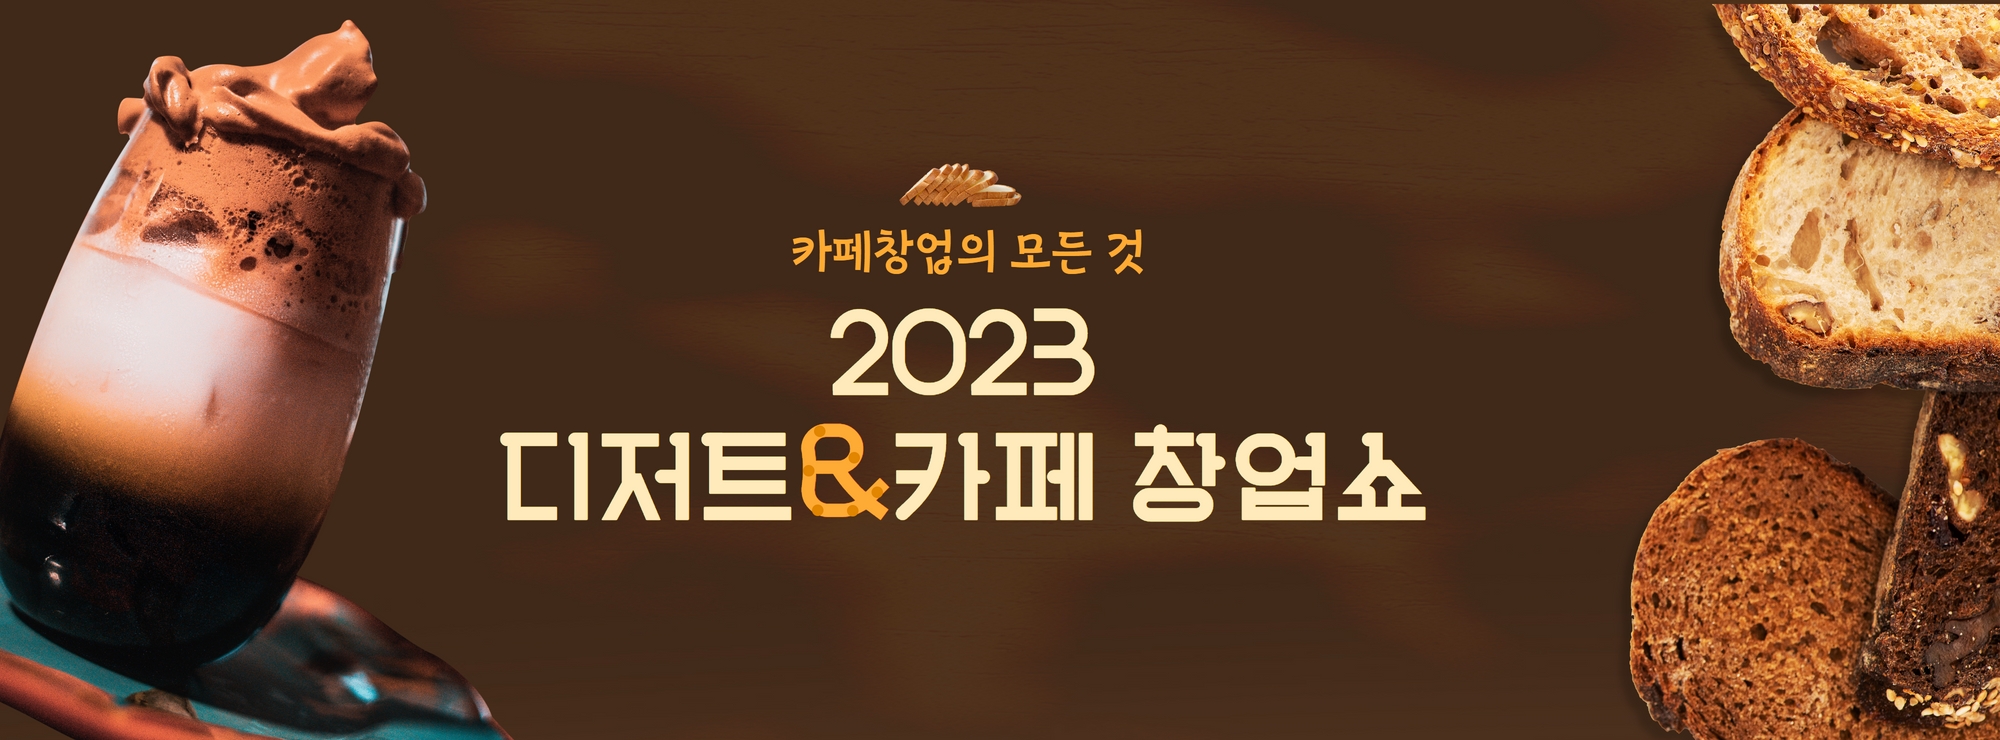 2023디저트_카페창업쇼